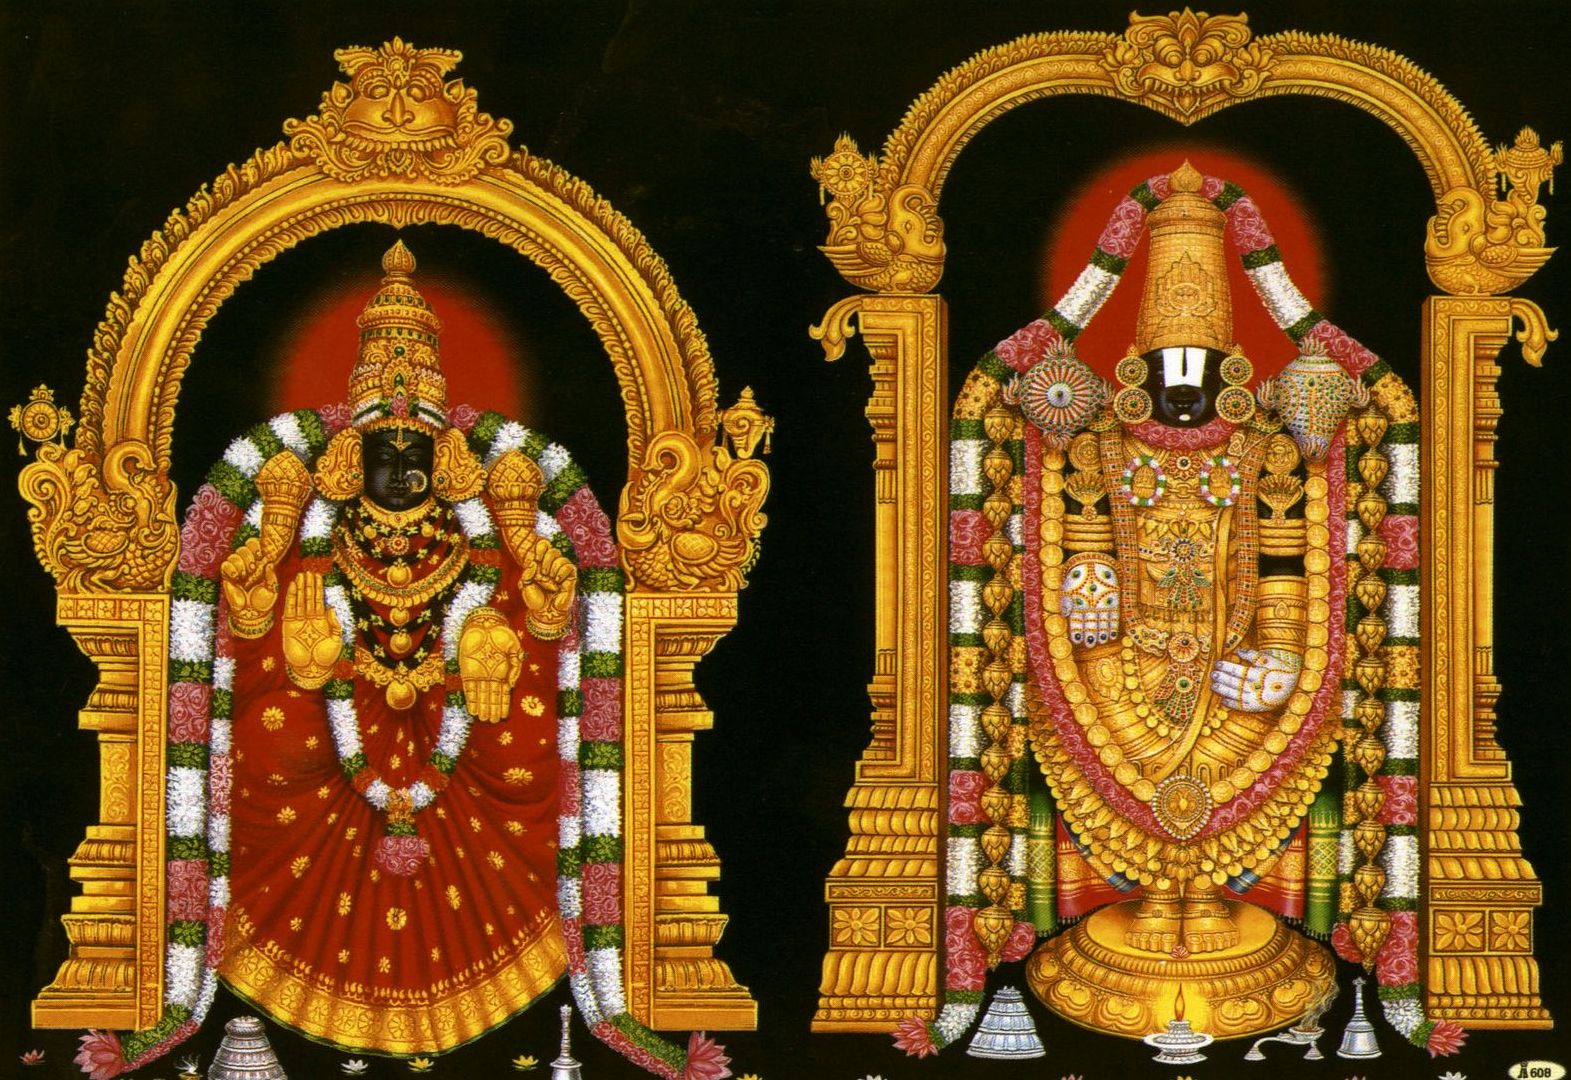 tirupati-balaji-hindu-temple-of-india-images-download.jpg